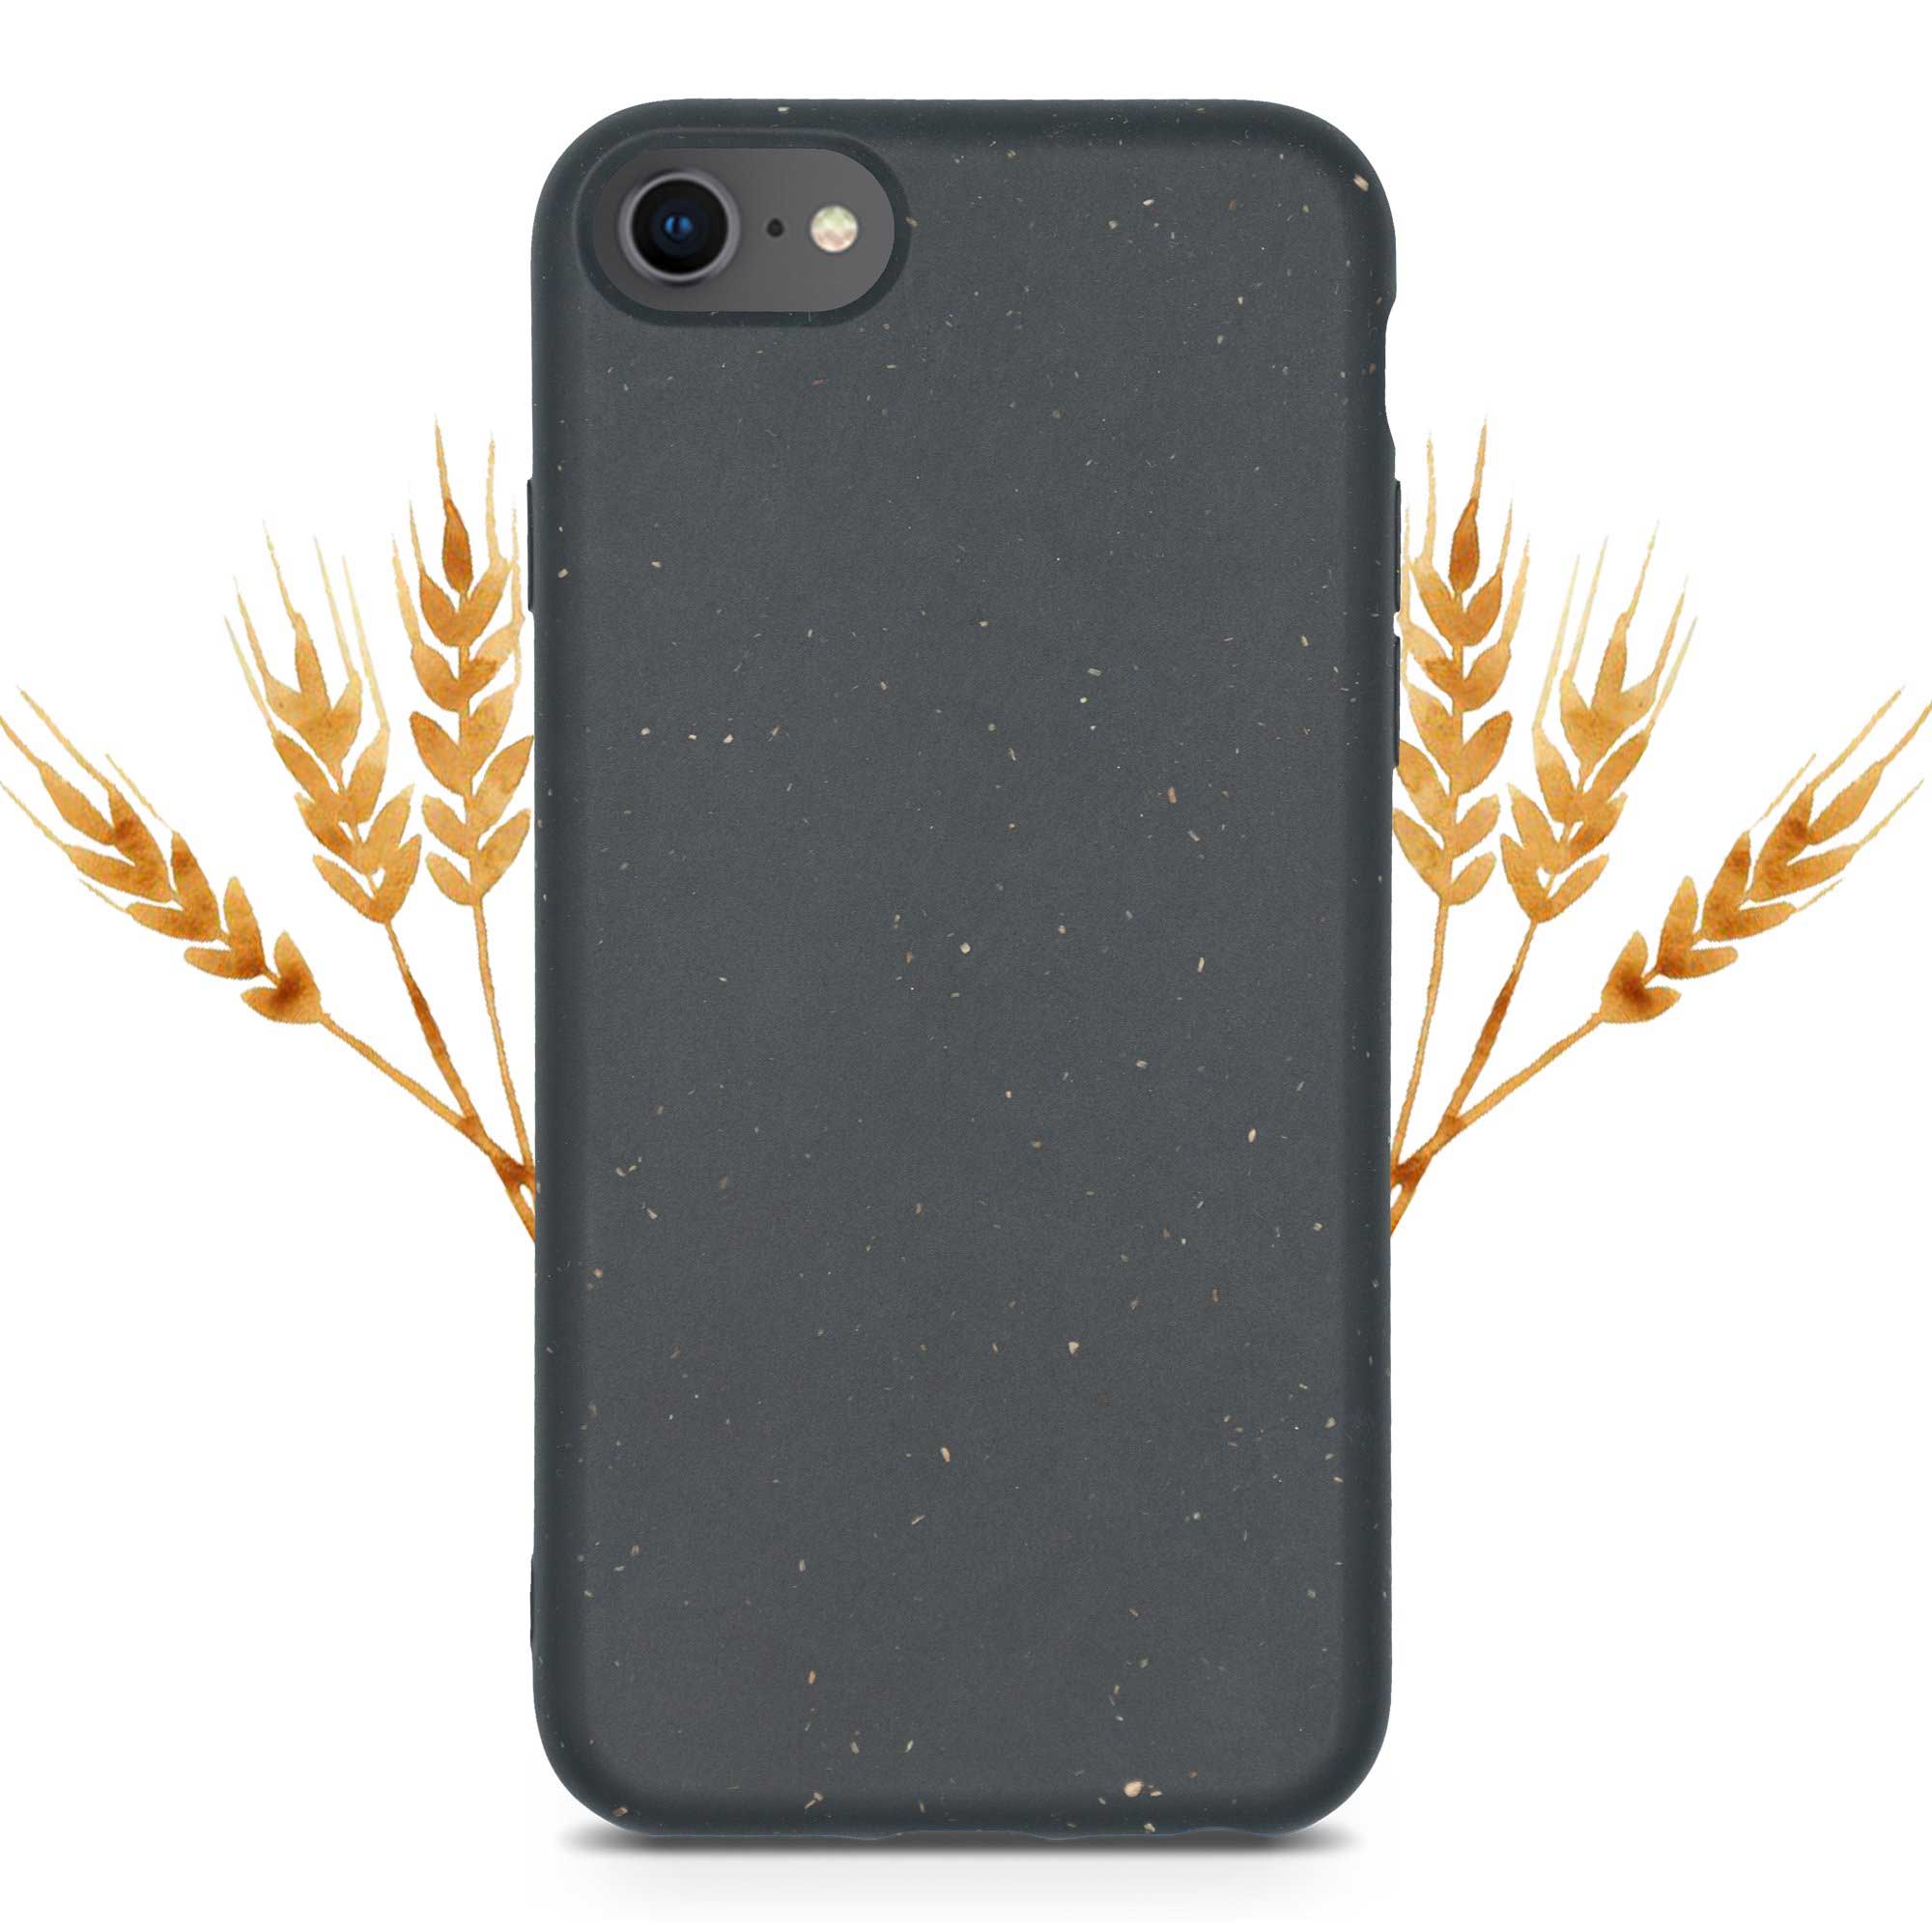 Carcasa negra biodegradable para iPhone 6